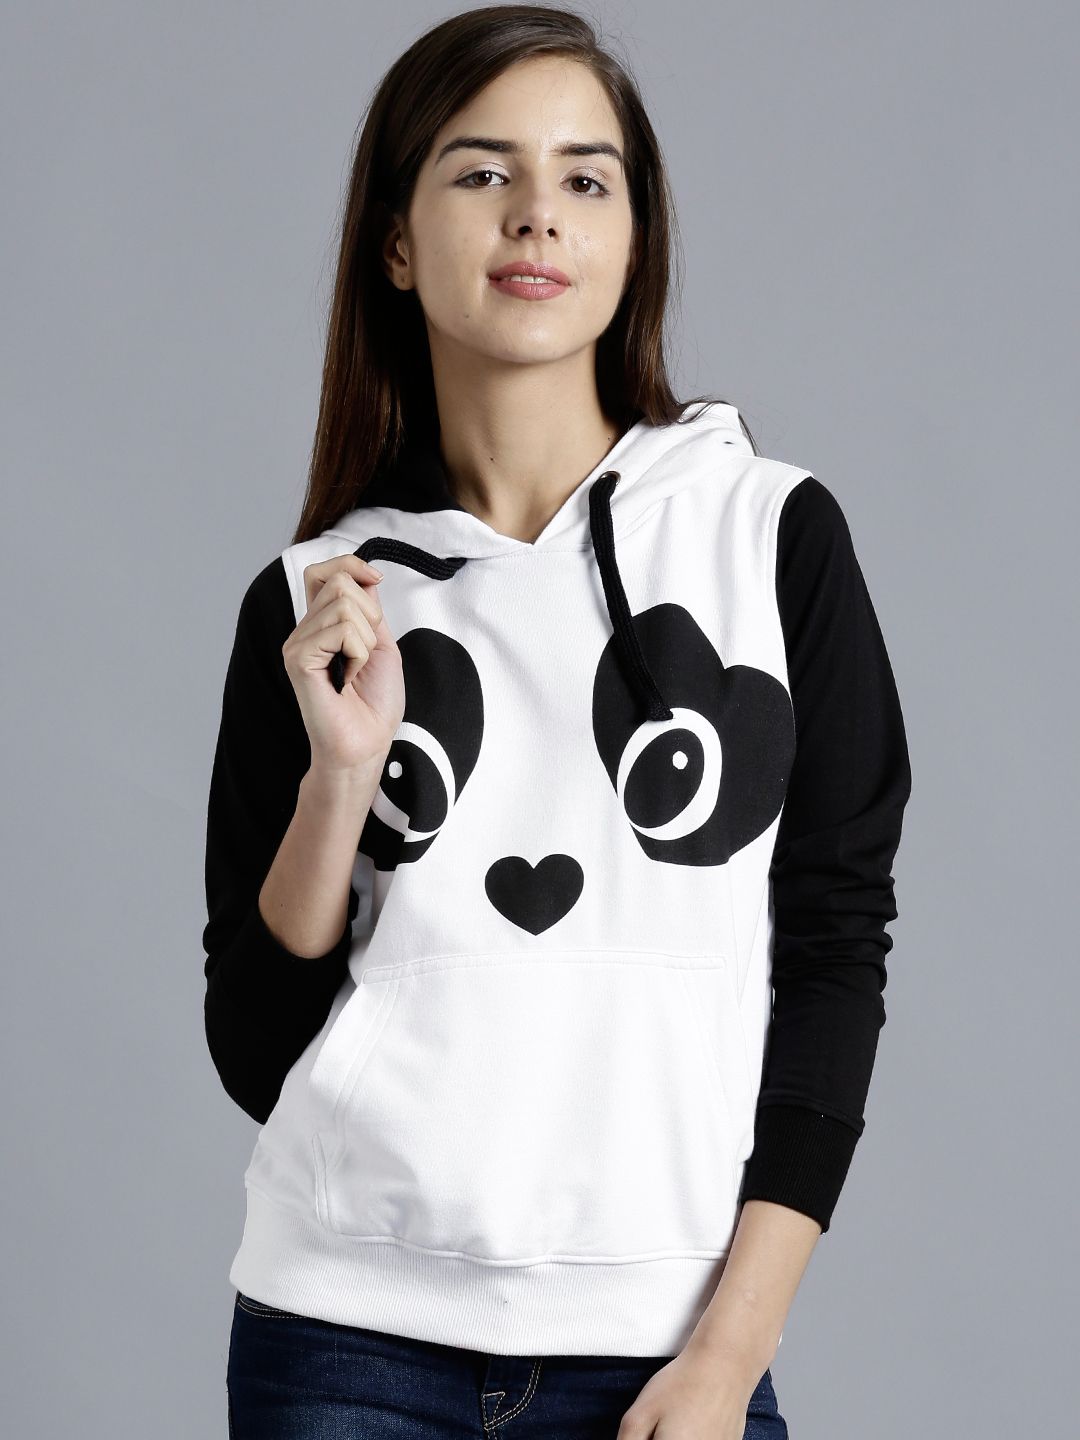 Kook N Keech White & Black Printed Colourblocked Hooded Sweatshirt Price in India